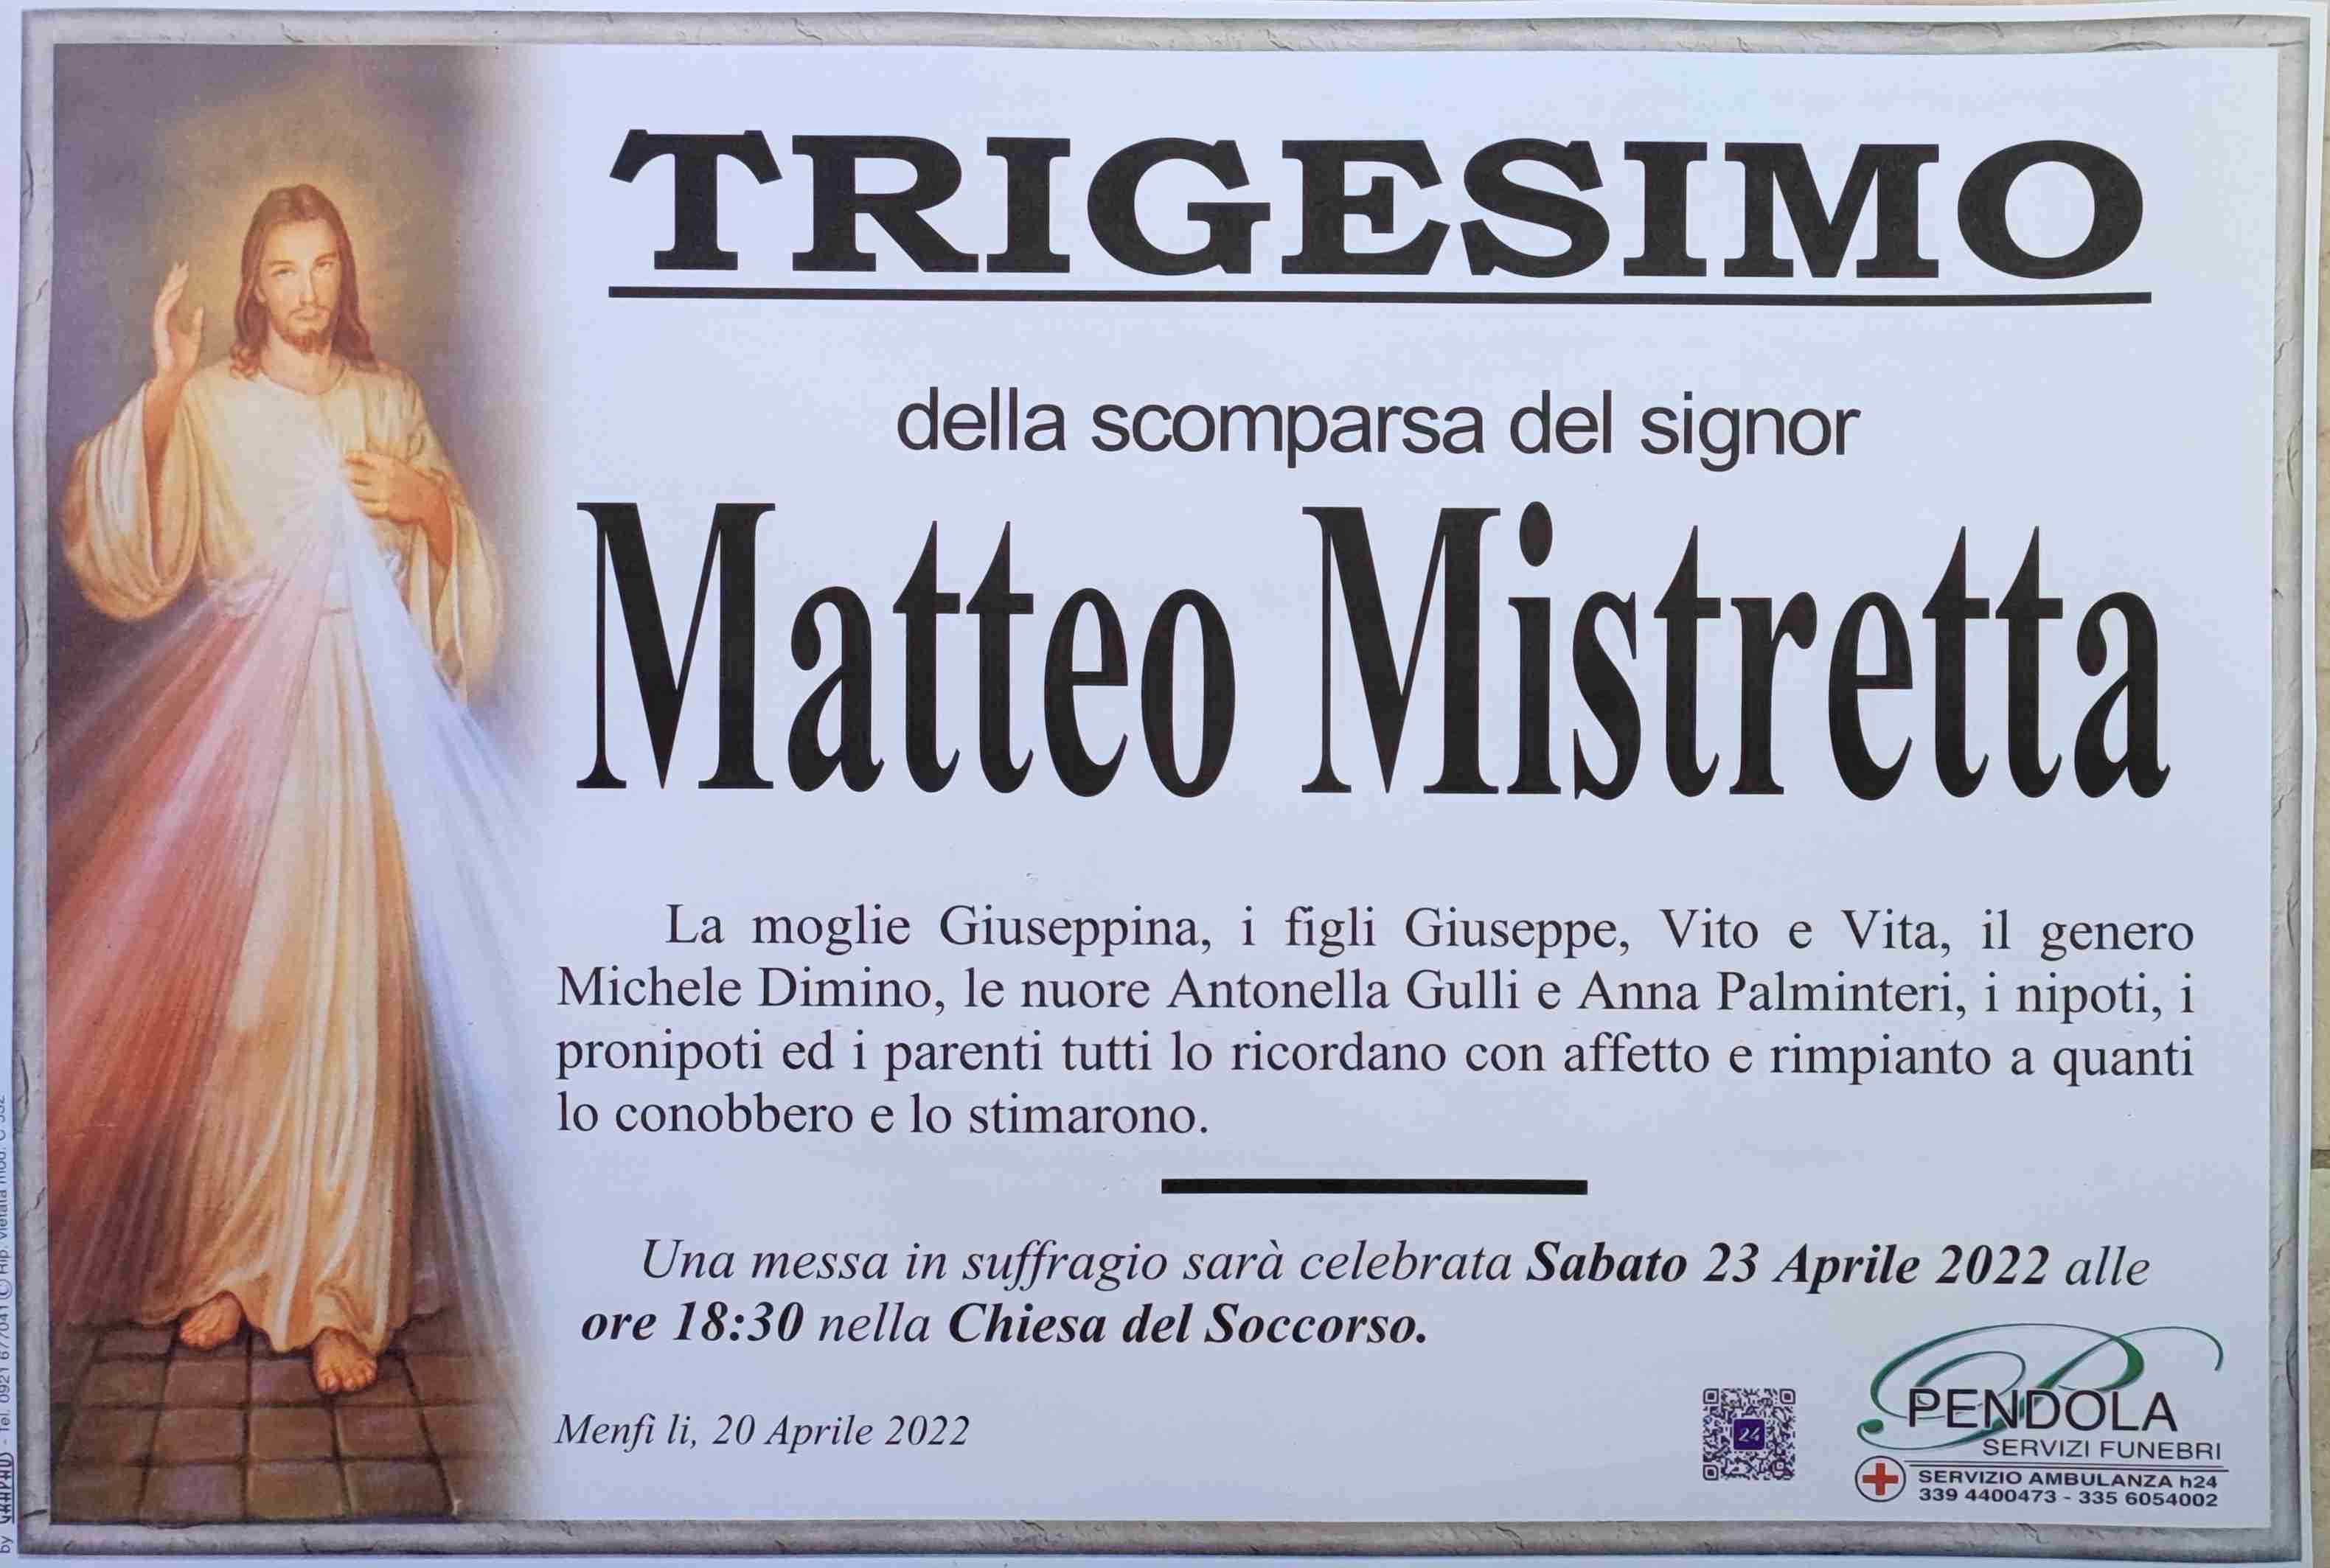 Matteo Mistretta